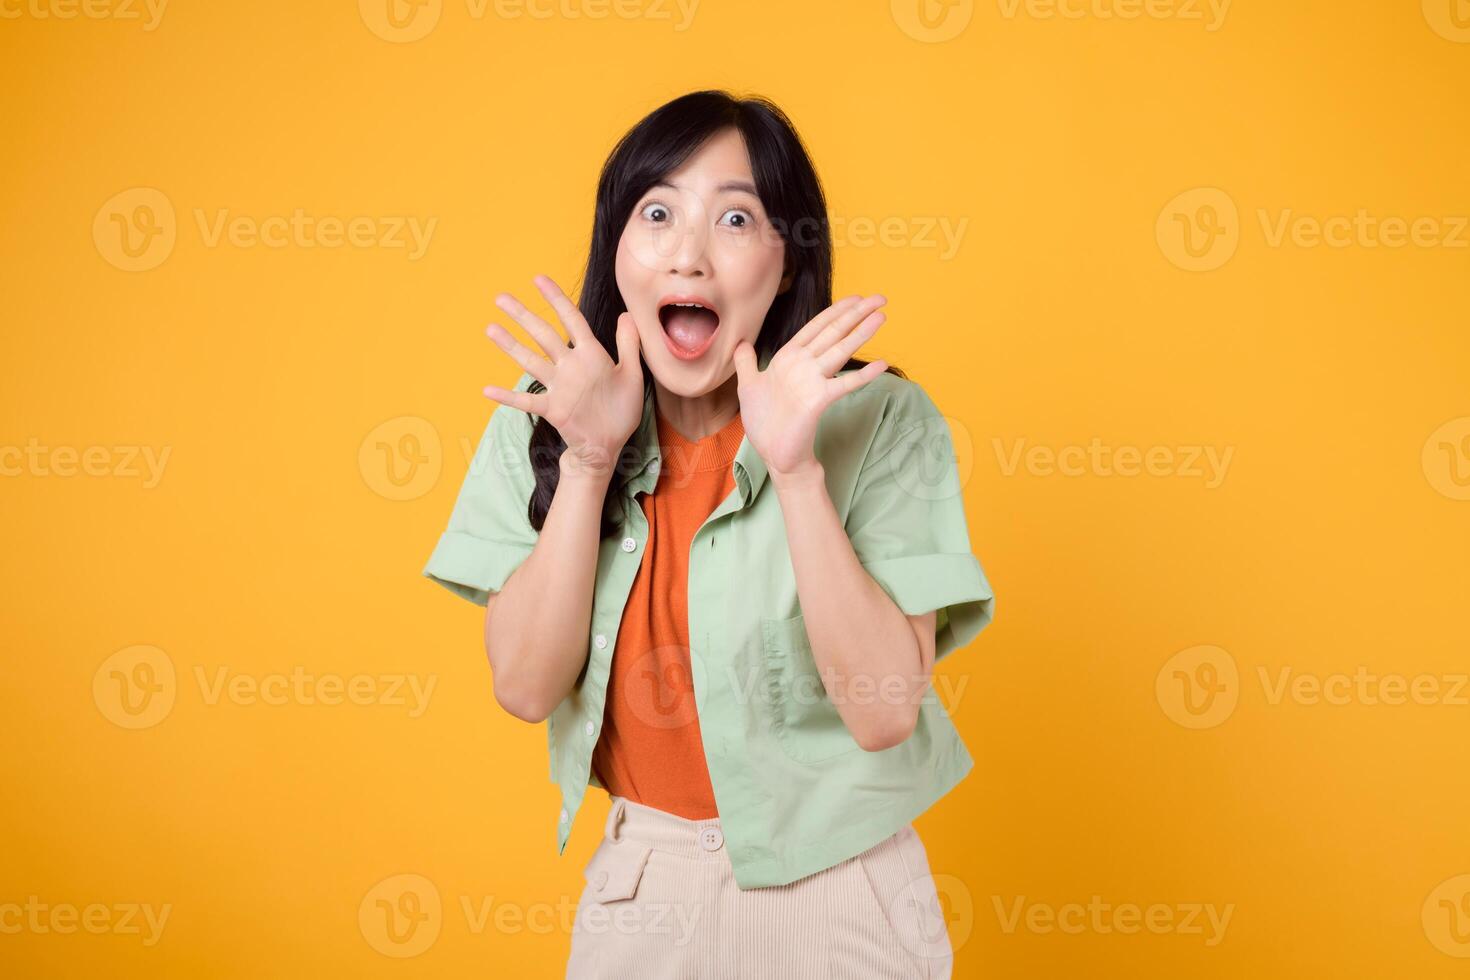 energético joven asiático mujer en su 30s vistiendo un verde y naranja camisa apasionadamente gritos con excitación. aislado en un amarillo fondo, representando el concepto de descuento compras promoción. foto